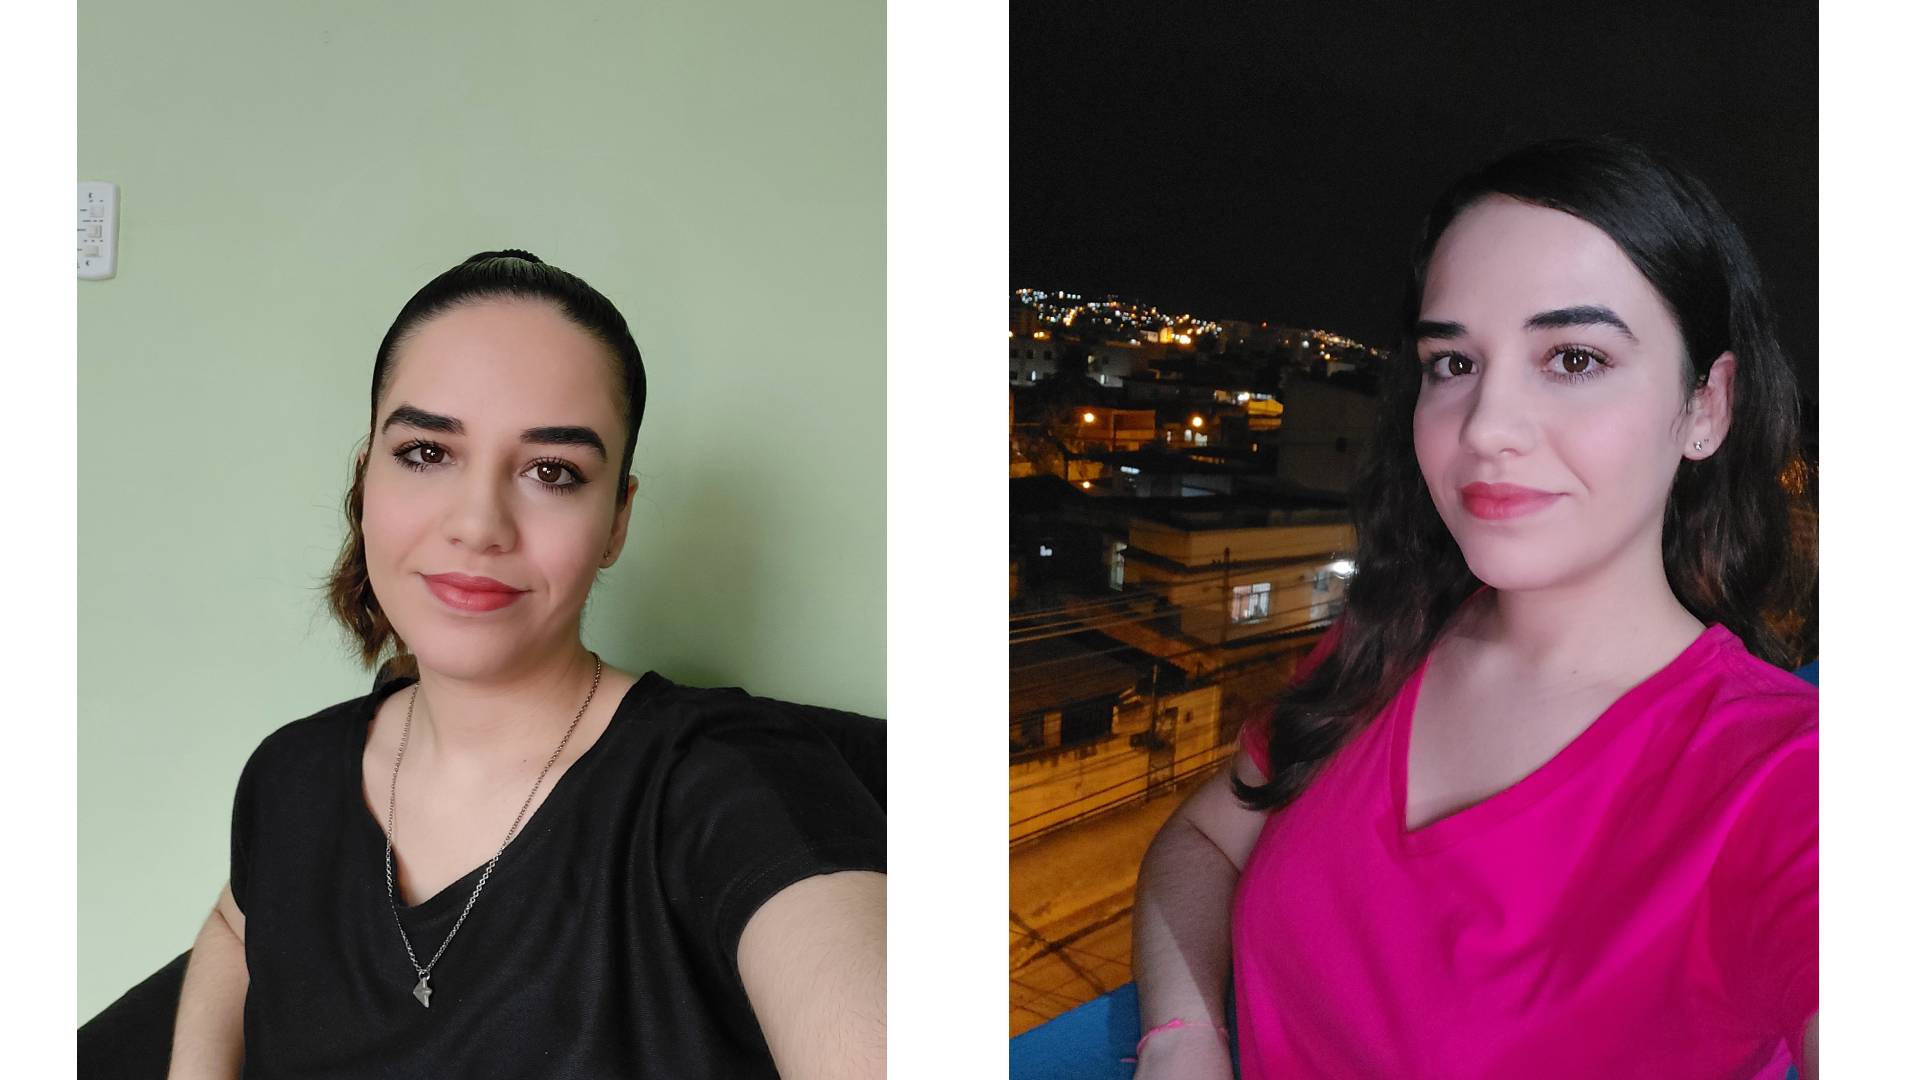 Comparativo de selfies diurna e noturna; mulher de camisa preta e cabelo preso na primeira e camisa rosa e cabelo solto na segunda